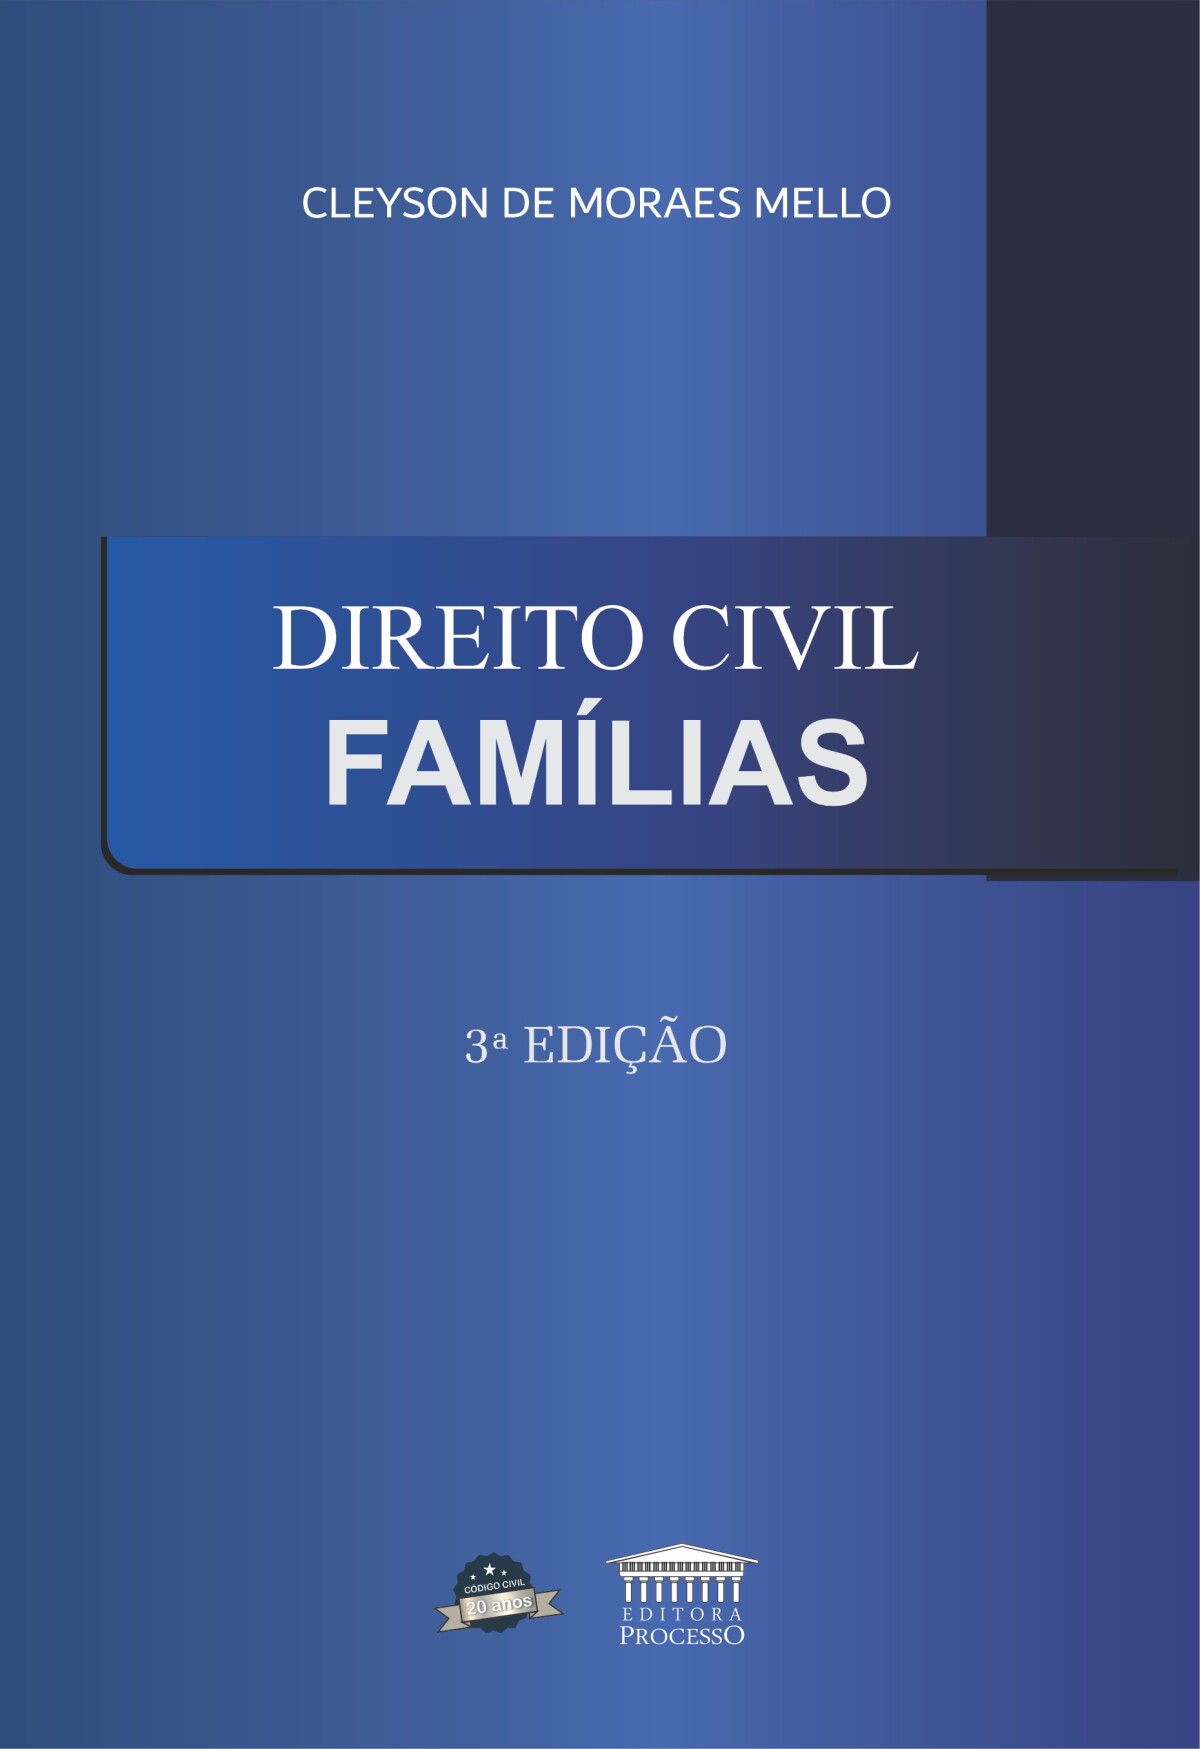 Foto 1 - Direito Civil Famílias - 3ª edição